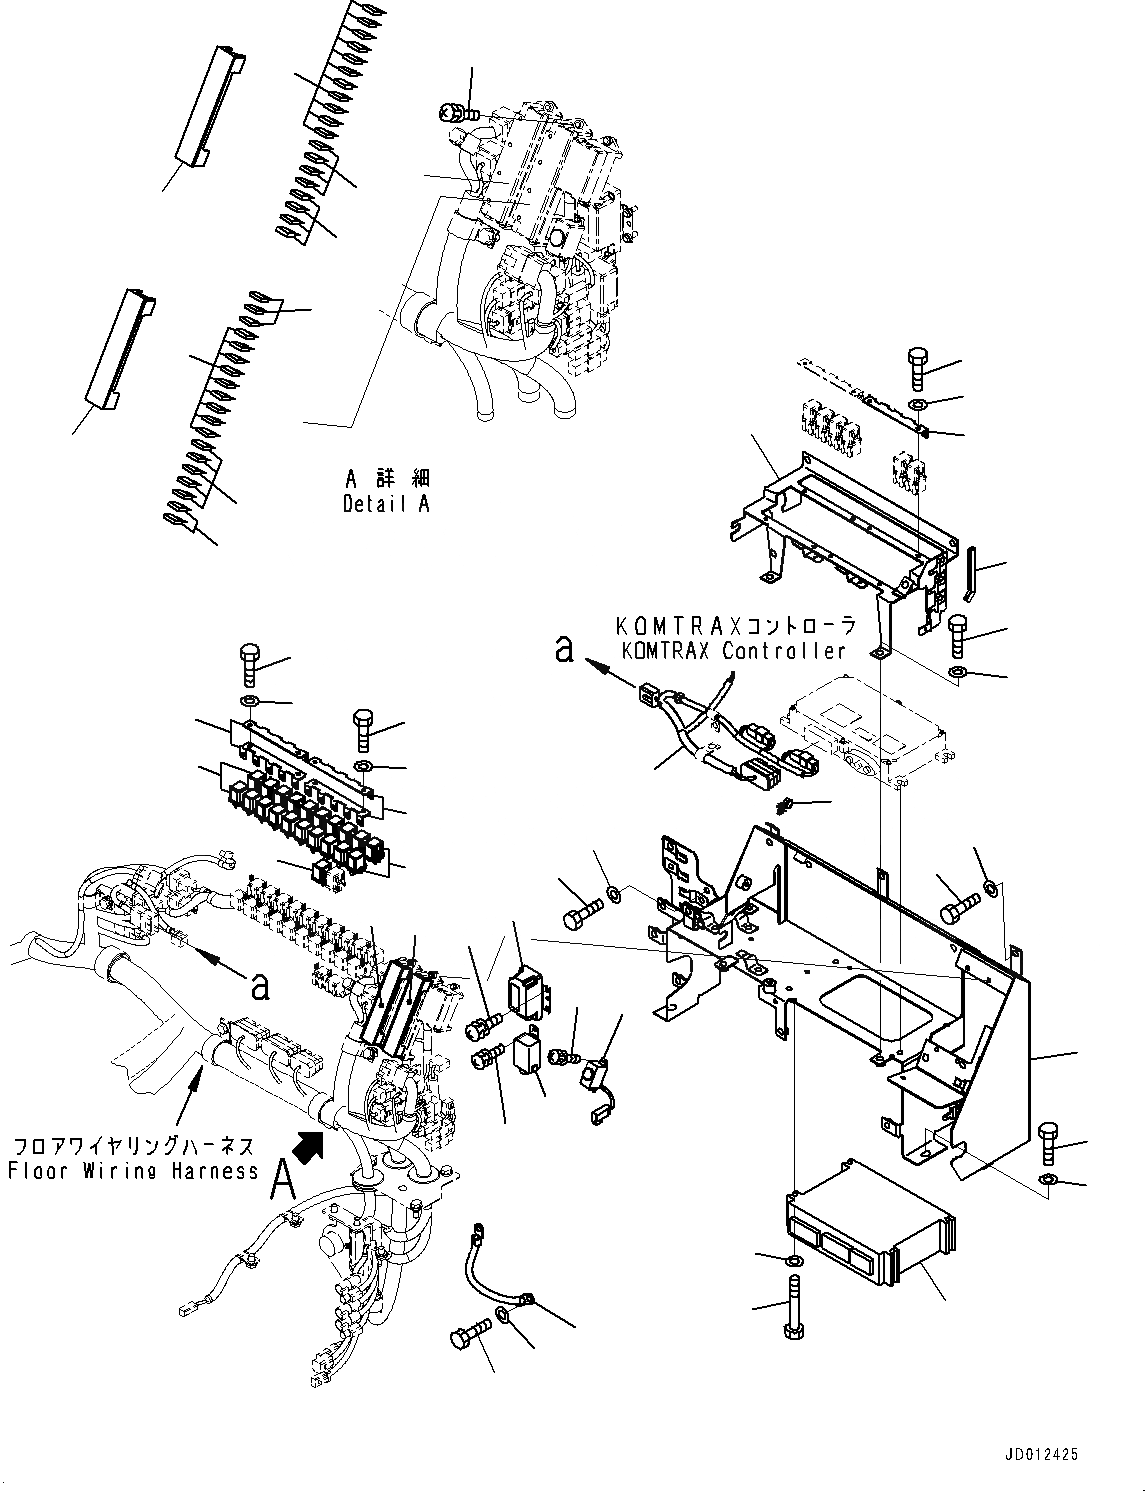 Схема запчастей Komatsu WA380-6 - КАБИНА ROPS, ЭЛЕКТРИЧ. ЧАСТИ (№99-) КАБИНА ROPS, MONOCOQUE ТИП, BOTH РАМА ОКНА, С КОНДИЦИОНЕРОМ